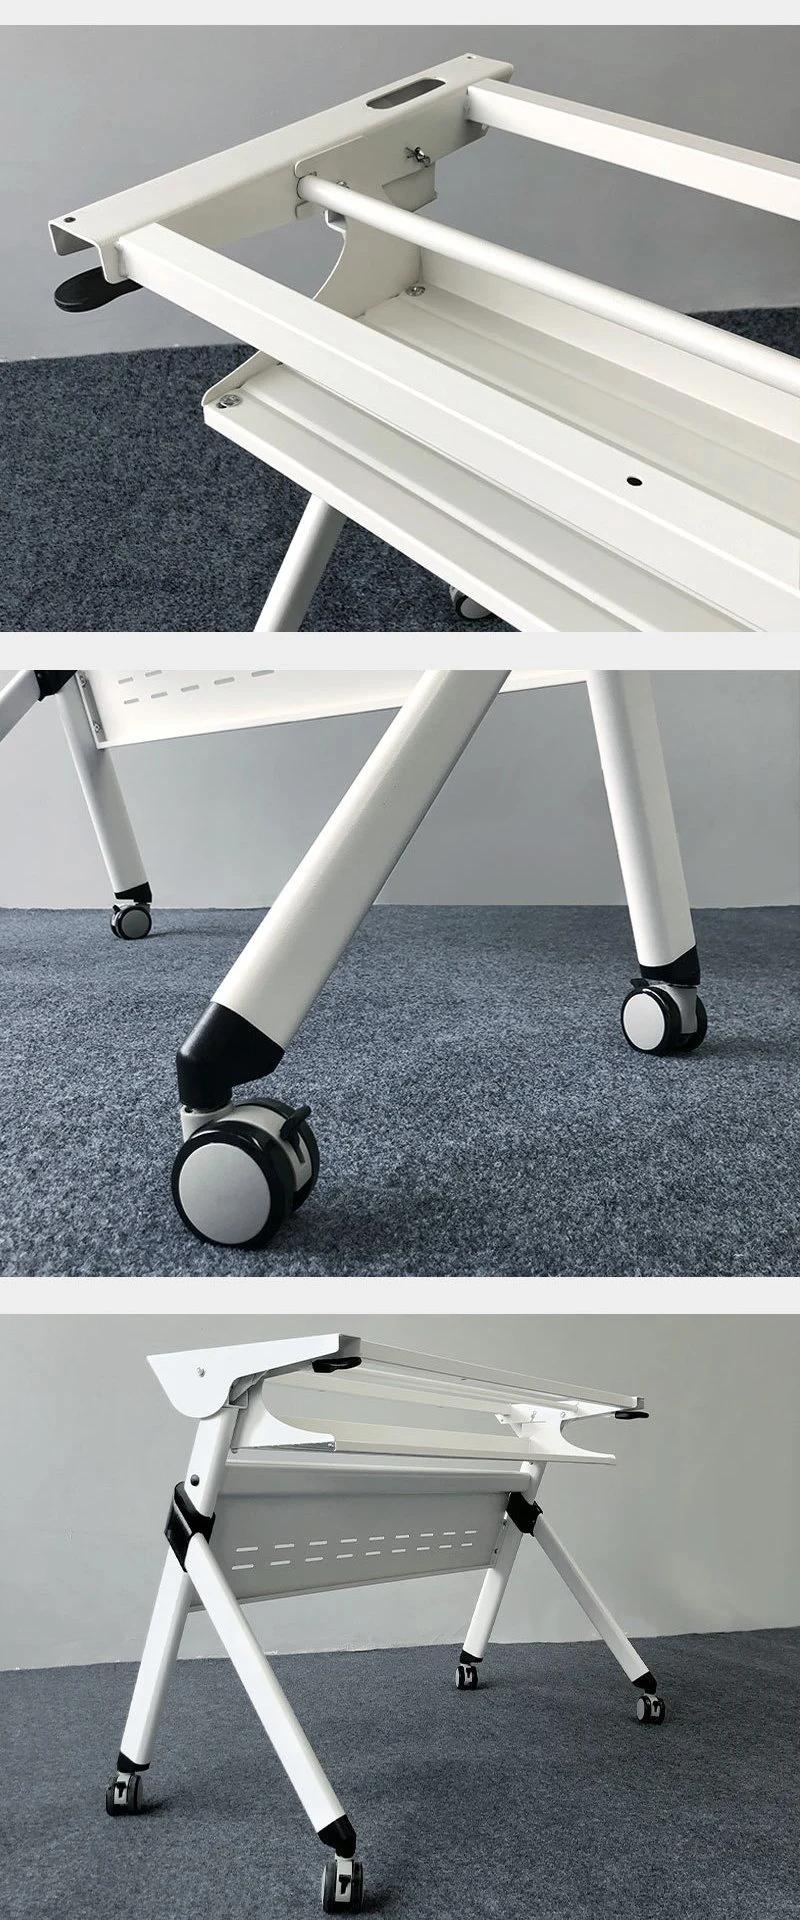 Painting Modern Design Training Meeting Table Office Furniture Conference Desk Adjustable Desk Office Desk